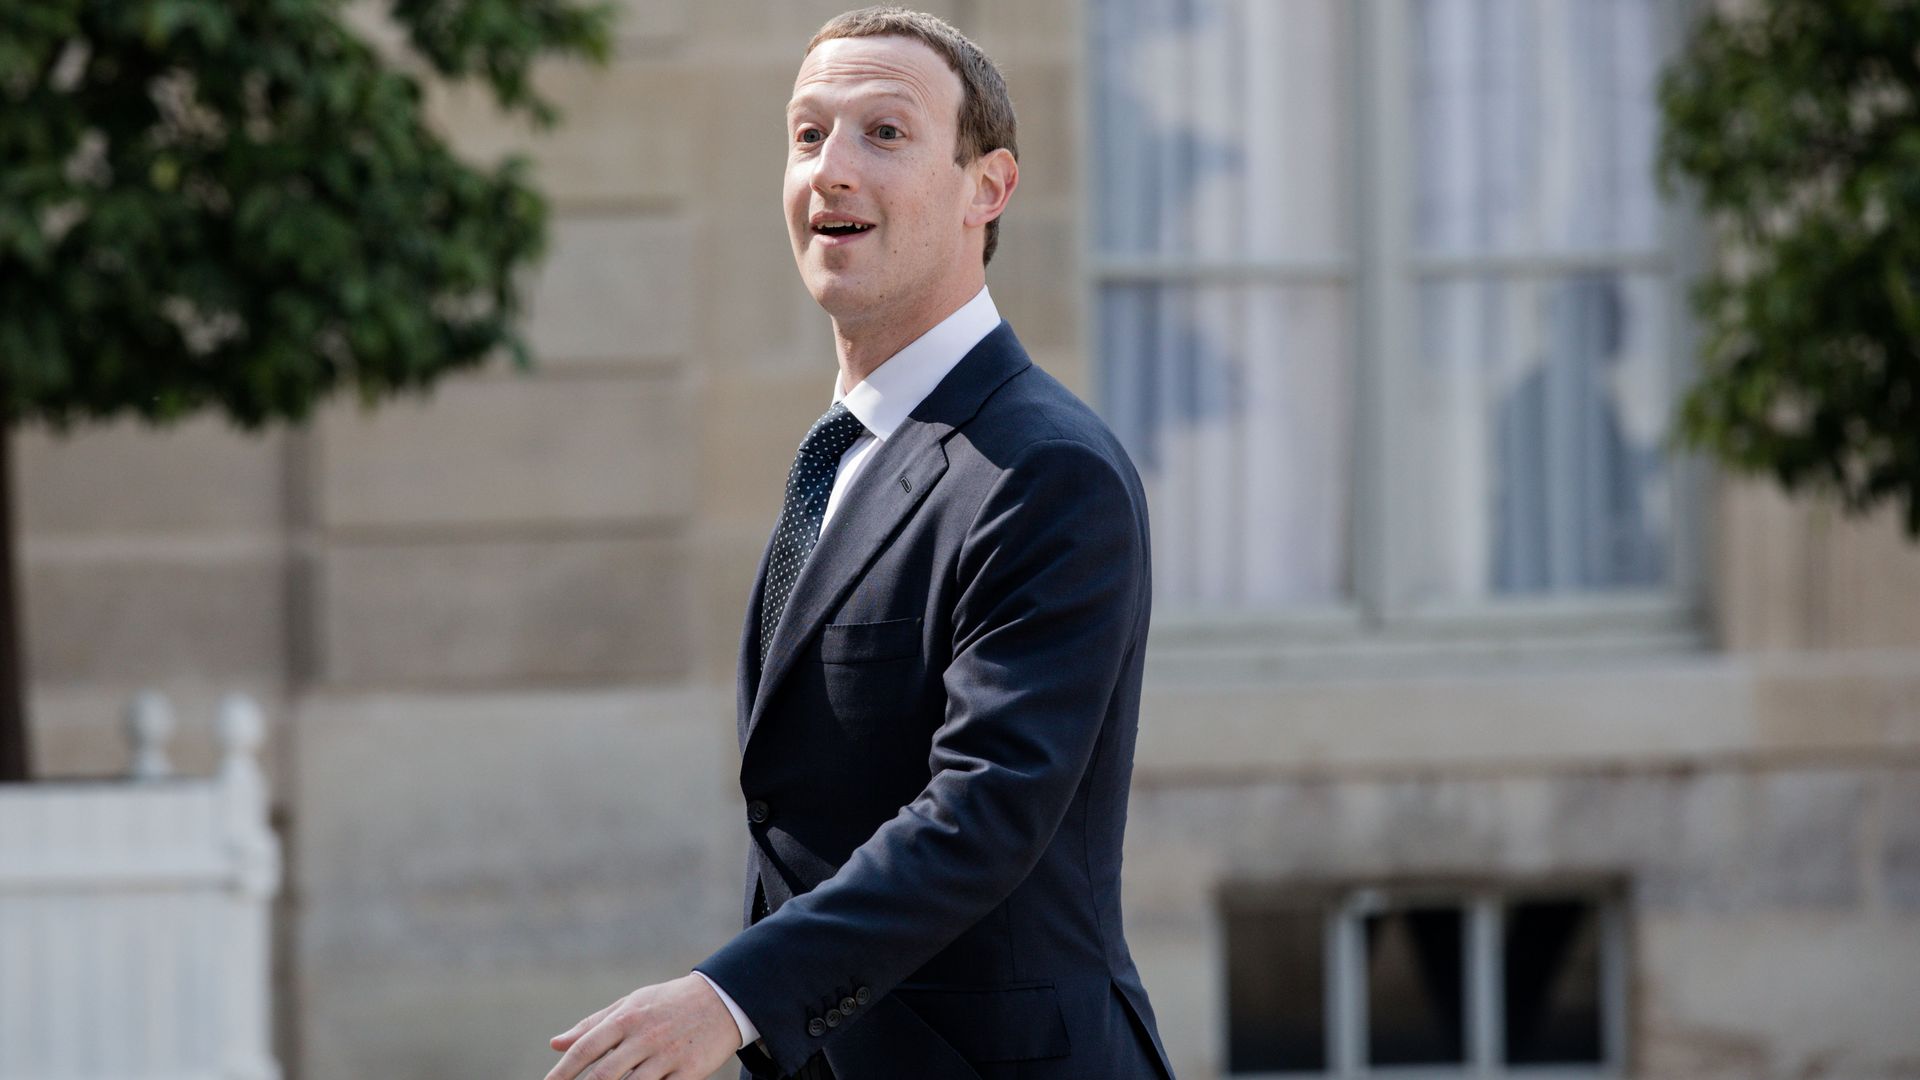 Mark Zuckerberg in a suit walking outdoors